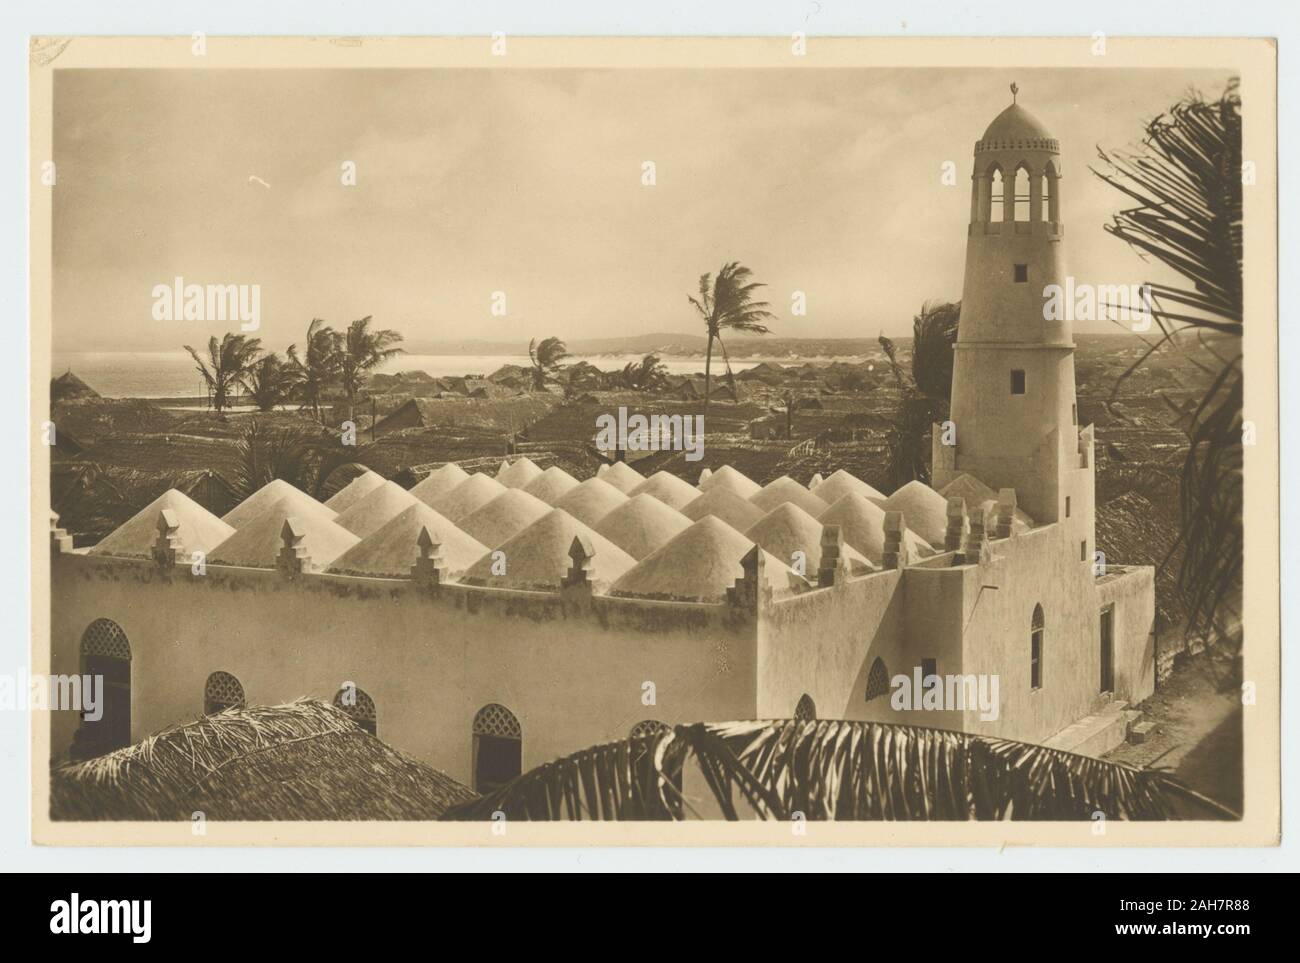 Somalia, Postcard of a mosque in Kismayo, with the sea in the background. Printed caption: CHISIMO - MoscheaEdizione Artistiche Foto Cine - Mogadiscio, circa 1940. 2000/084/1/1/4/34. Stock Photo